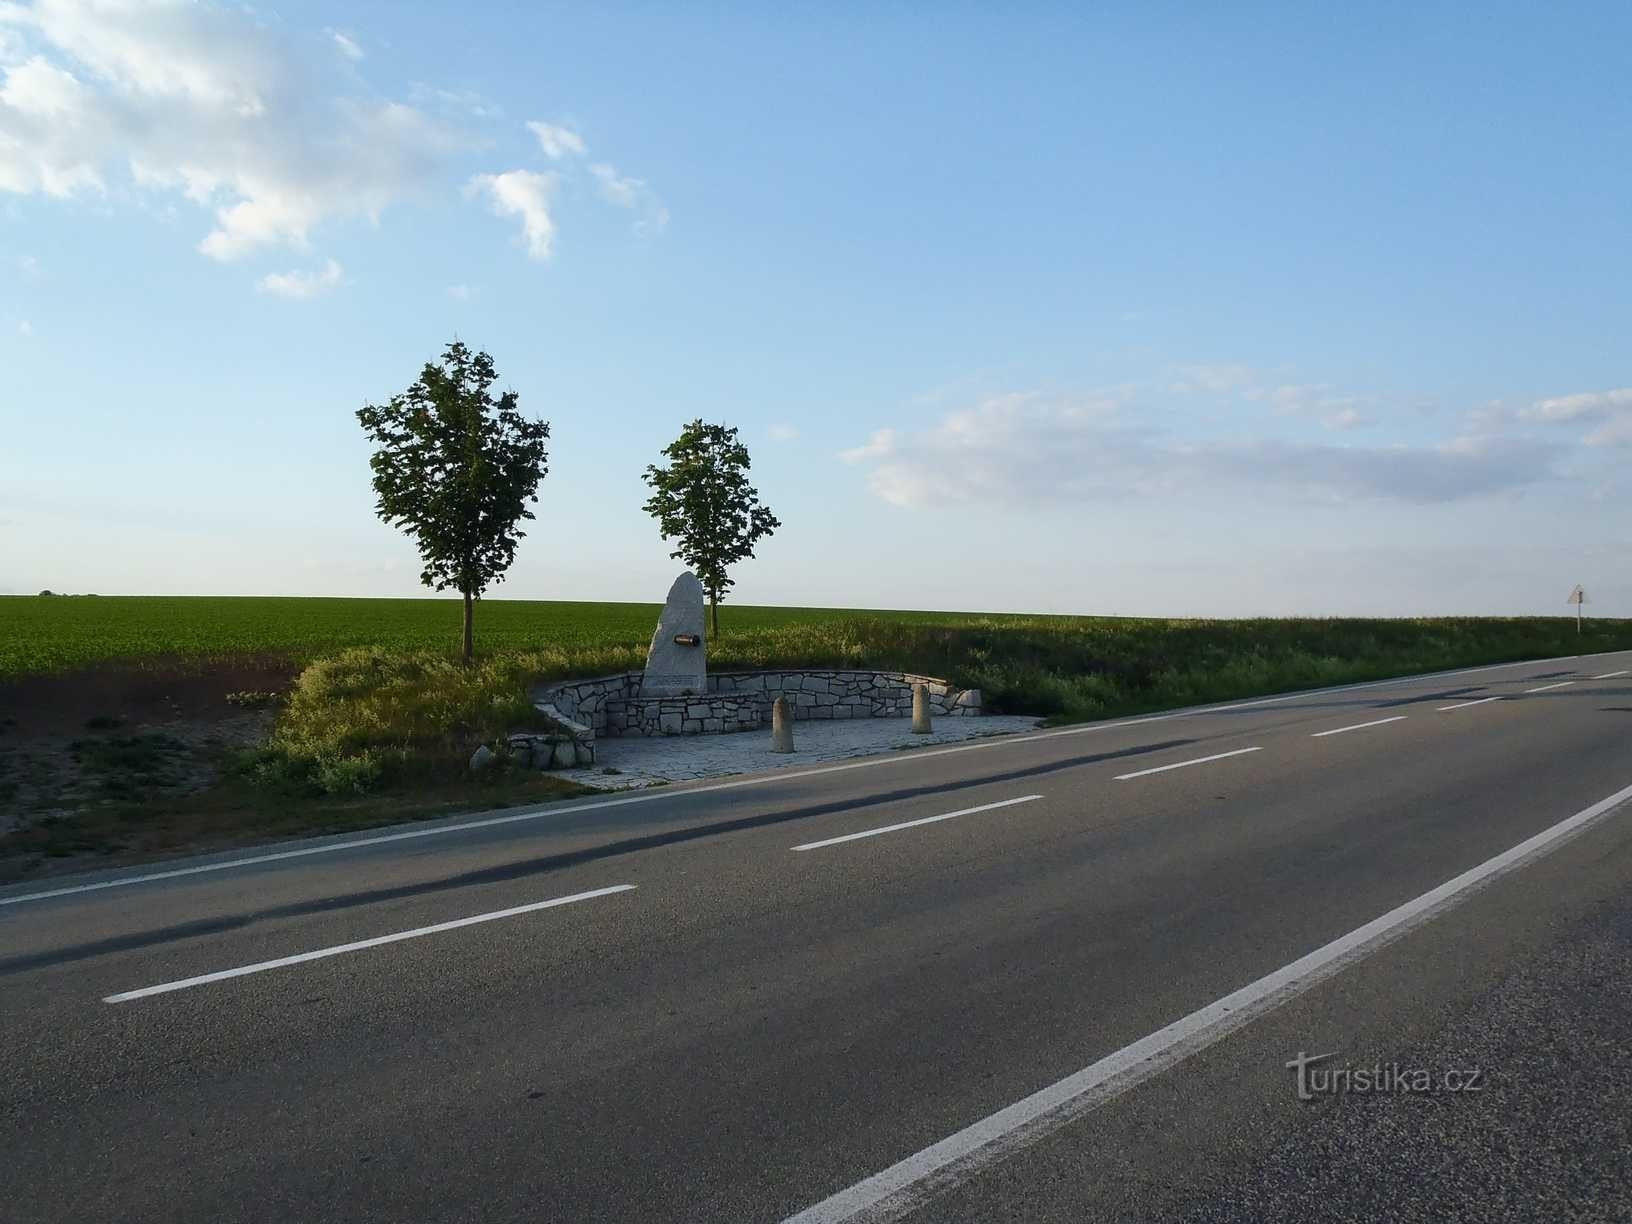 Пам'ятник австрійським артилеристам - 25.5.2012